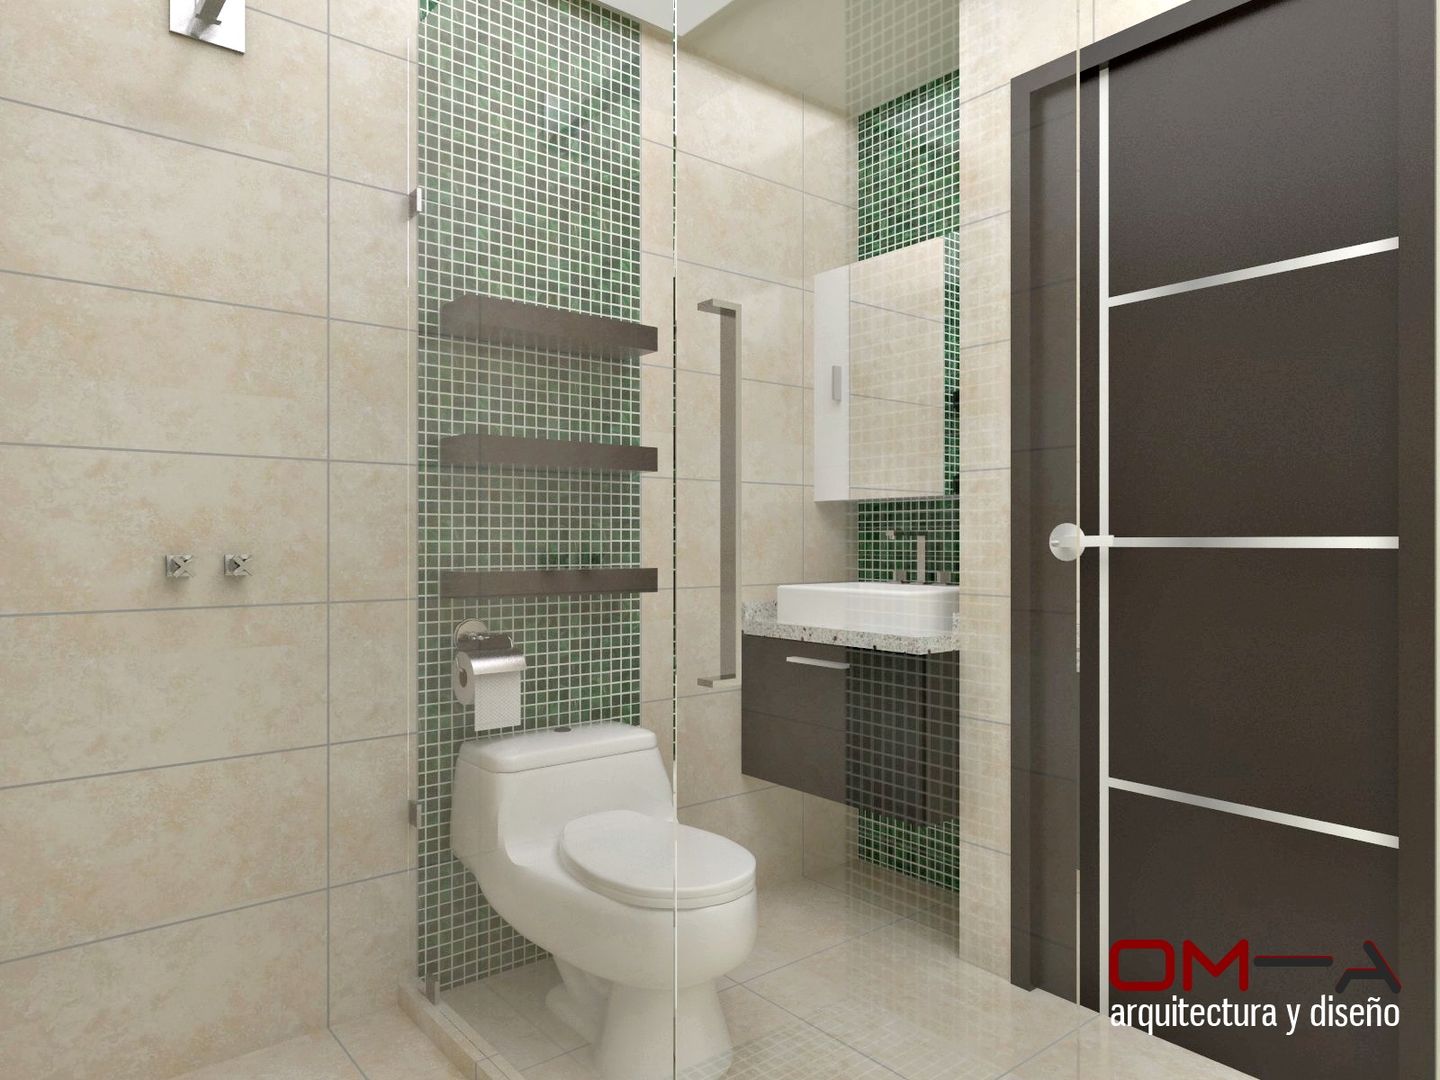 Diseño interior en apartamento , om-a arquitectura y diseño om-a arquitectura y diseño ห้องน้ำ